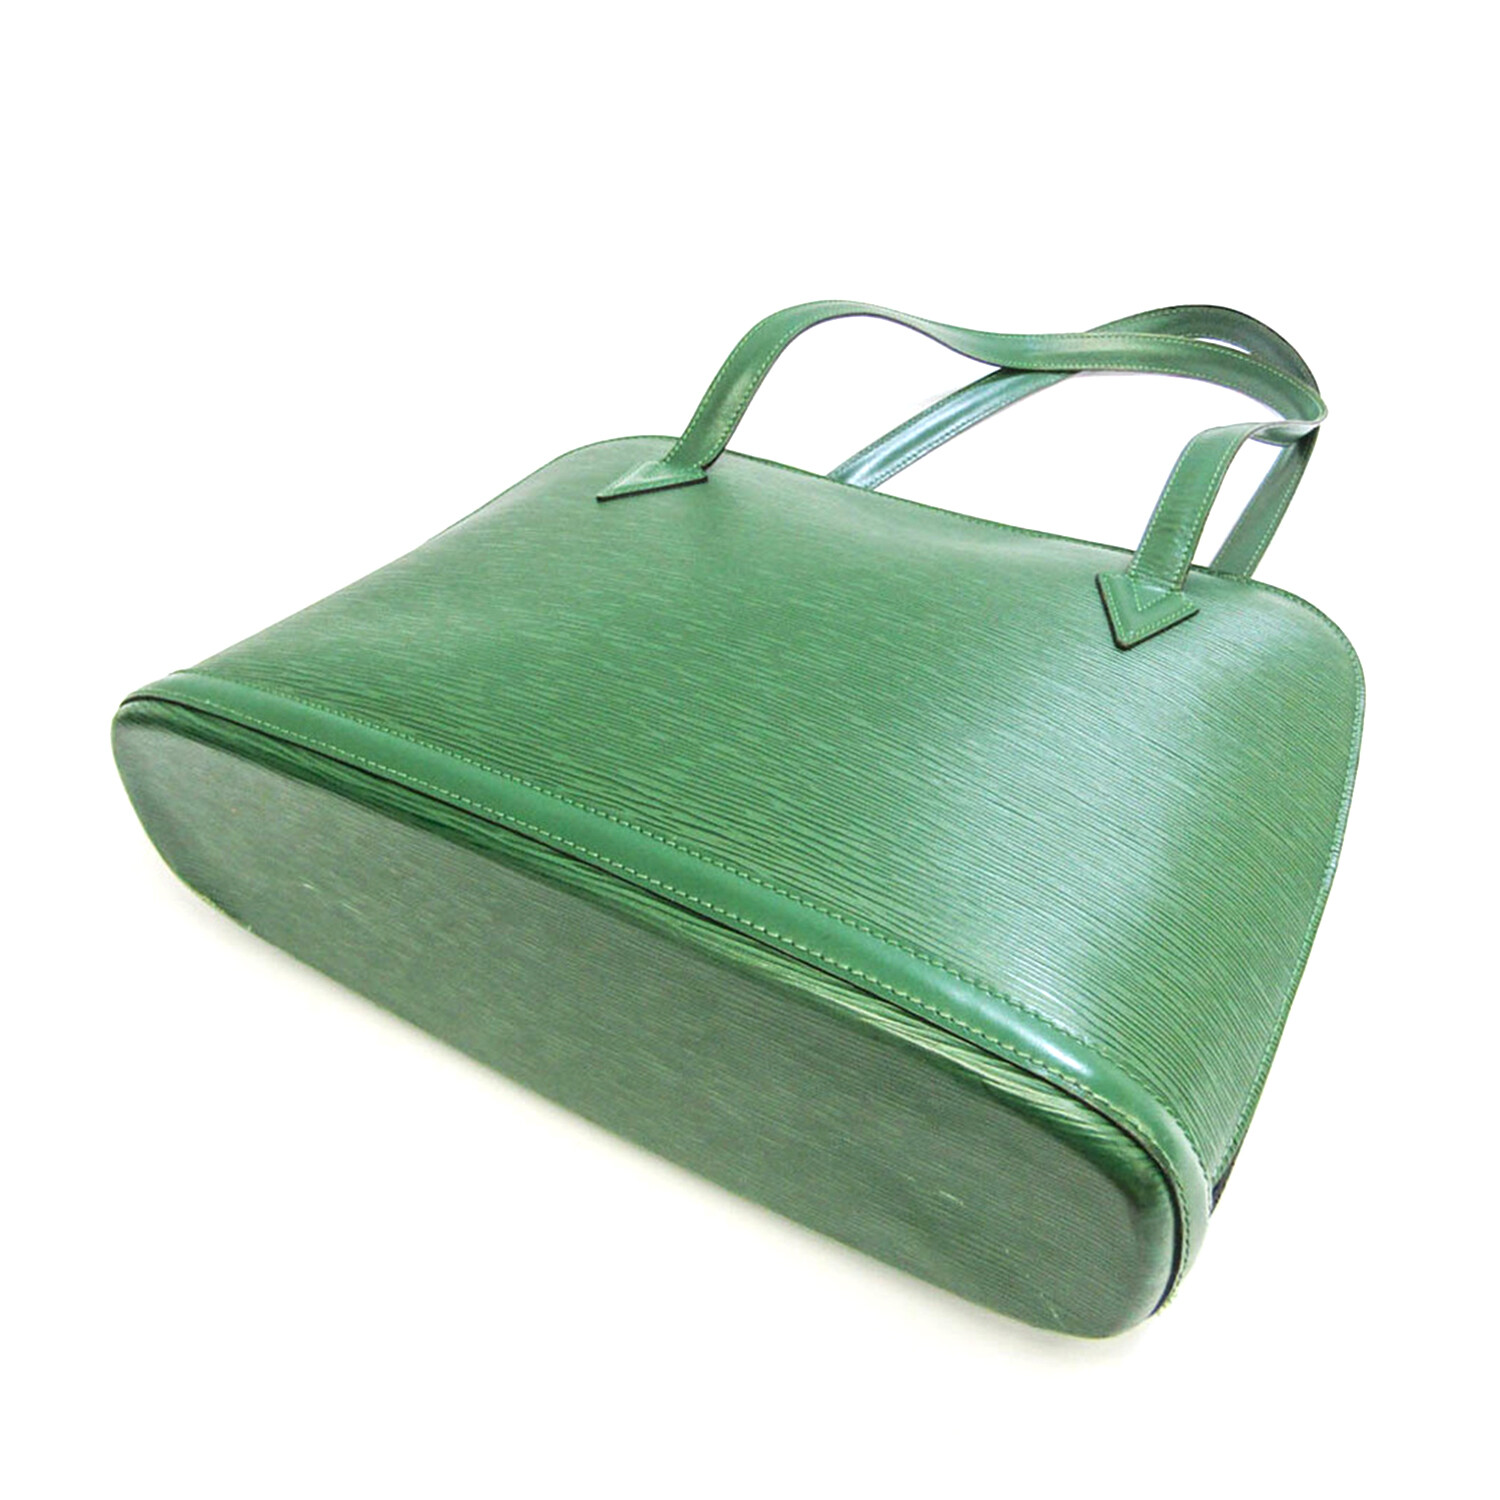 Louis Vuitton Epi Leather Shoulder Bag // Borneo Green // Pre